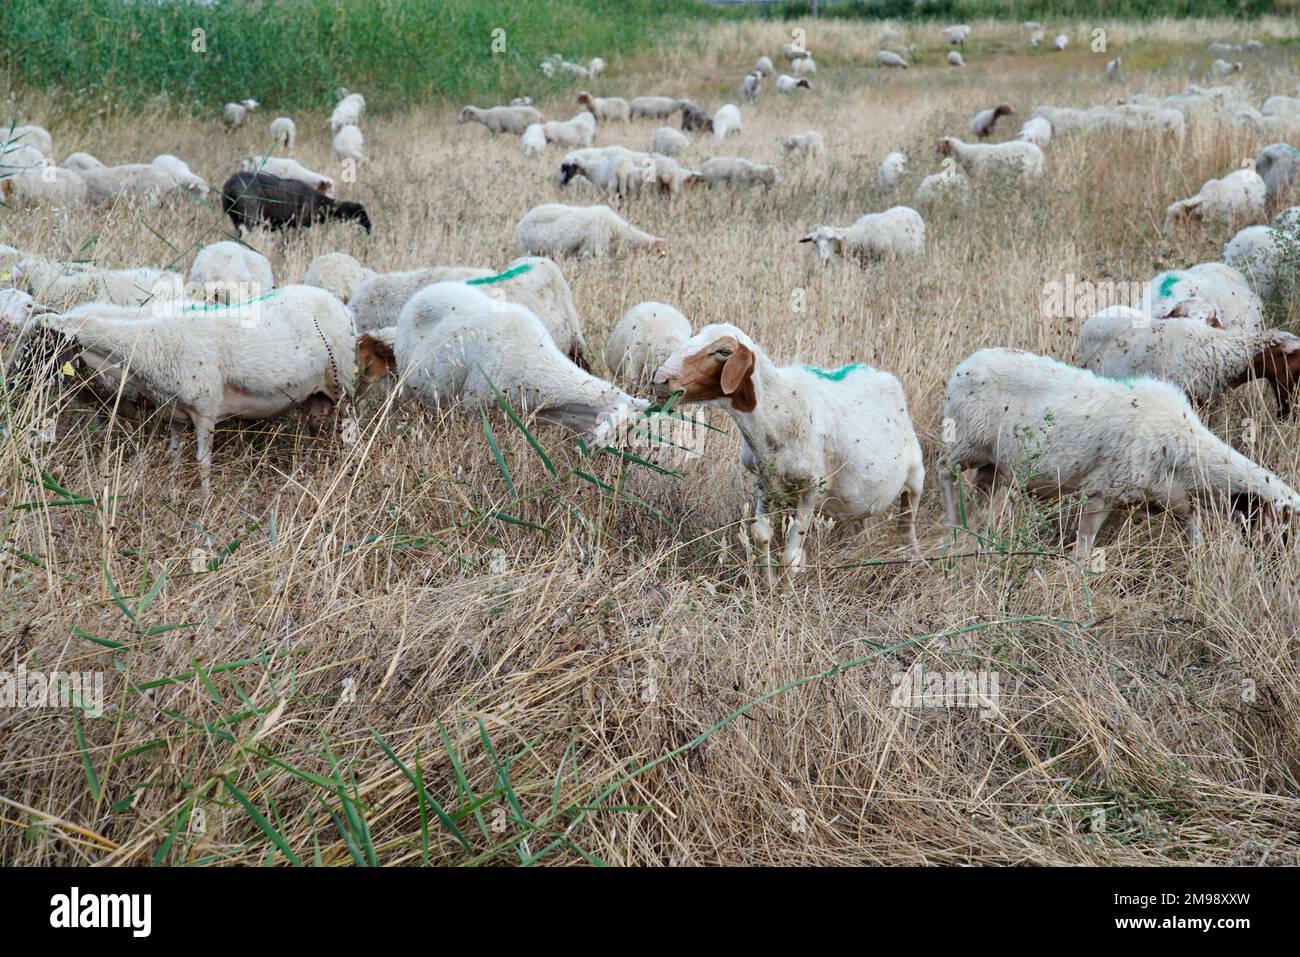 Schafe auf der Weide,Craco,Provinz Matera,Region Basilicata,Italien Stockfoto